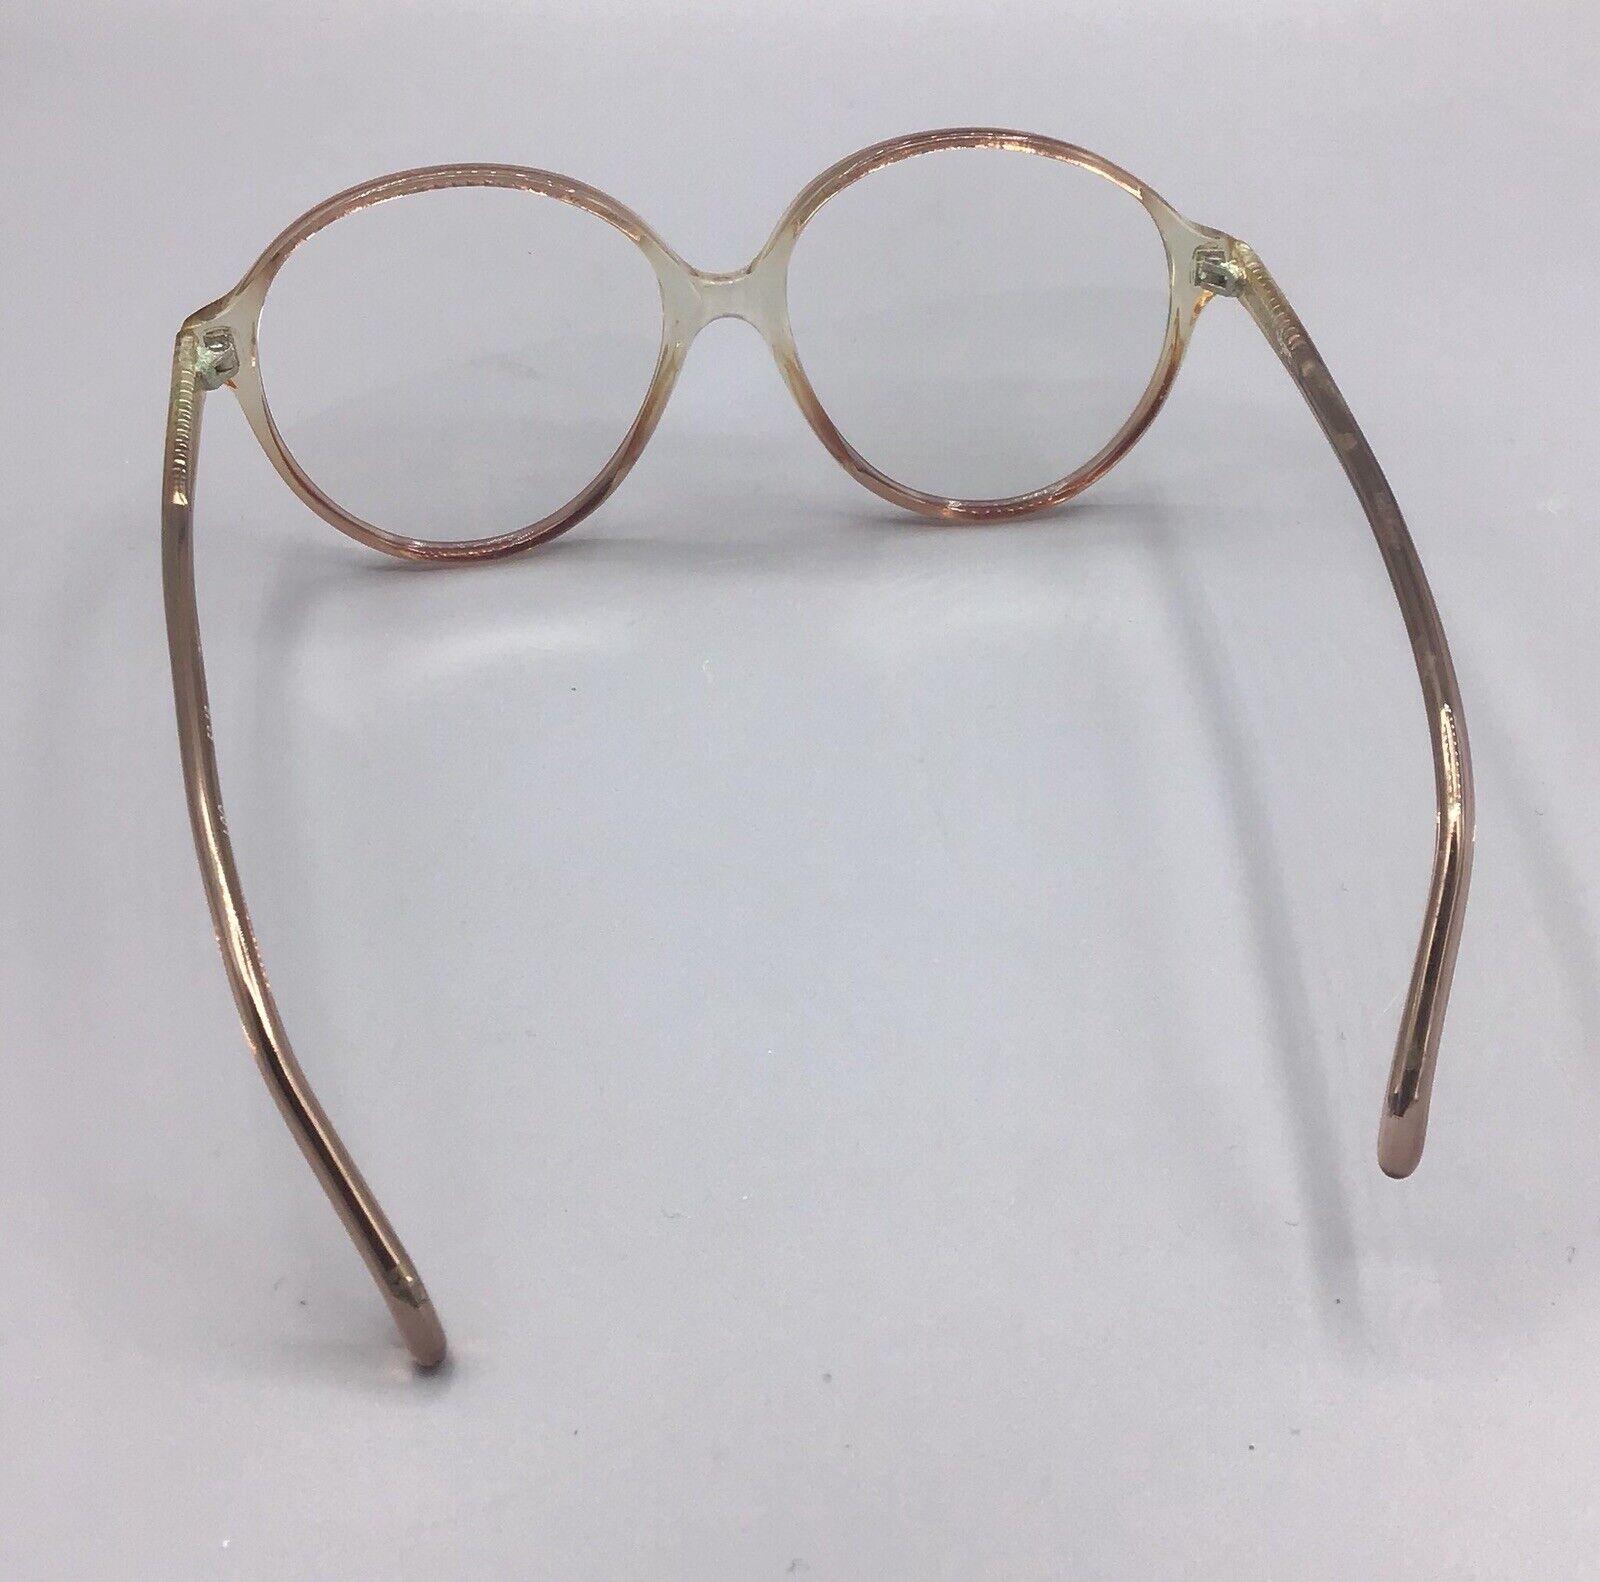 Vogart L90 206 occhiale vintage eyewear frame brillen lunettes